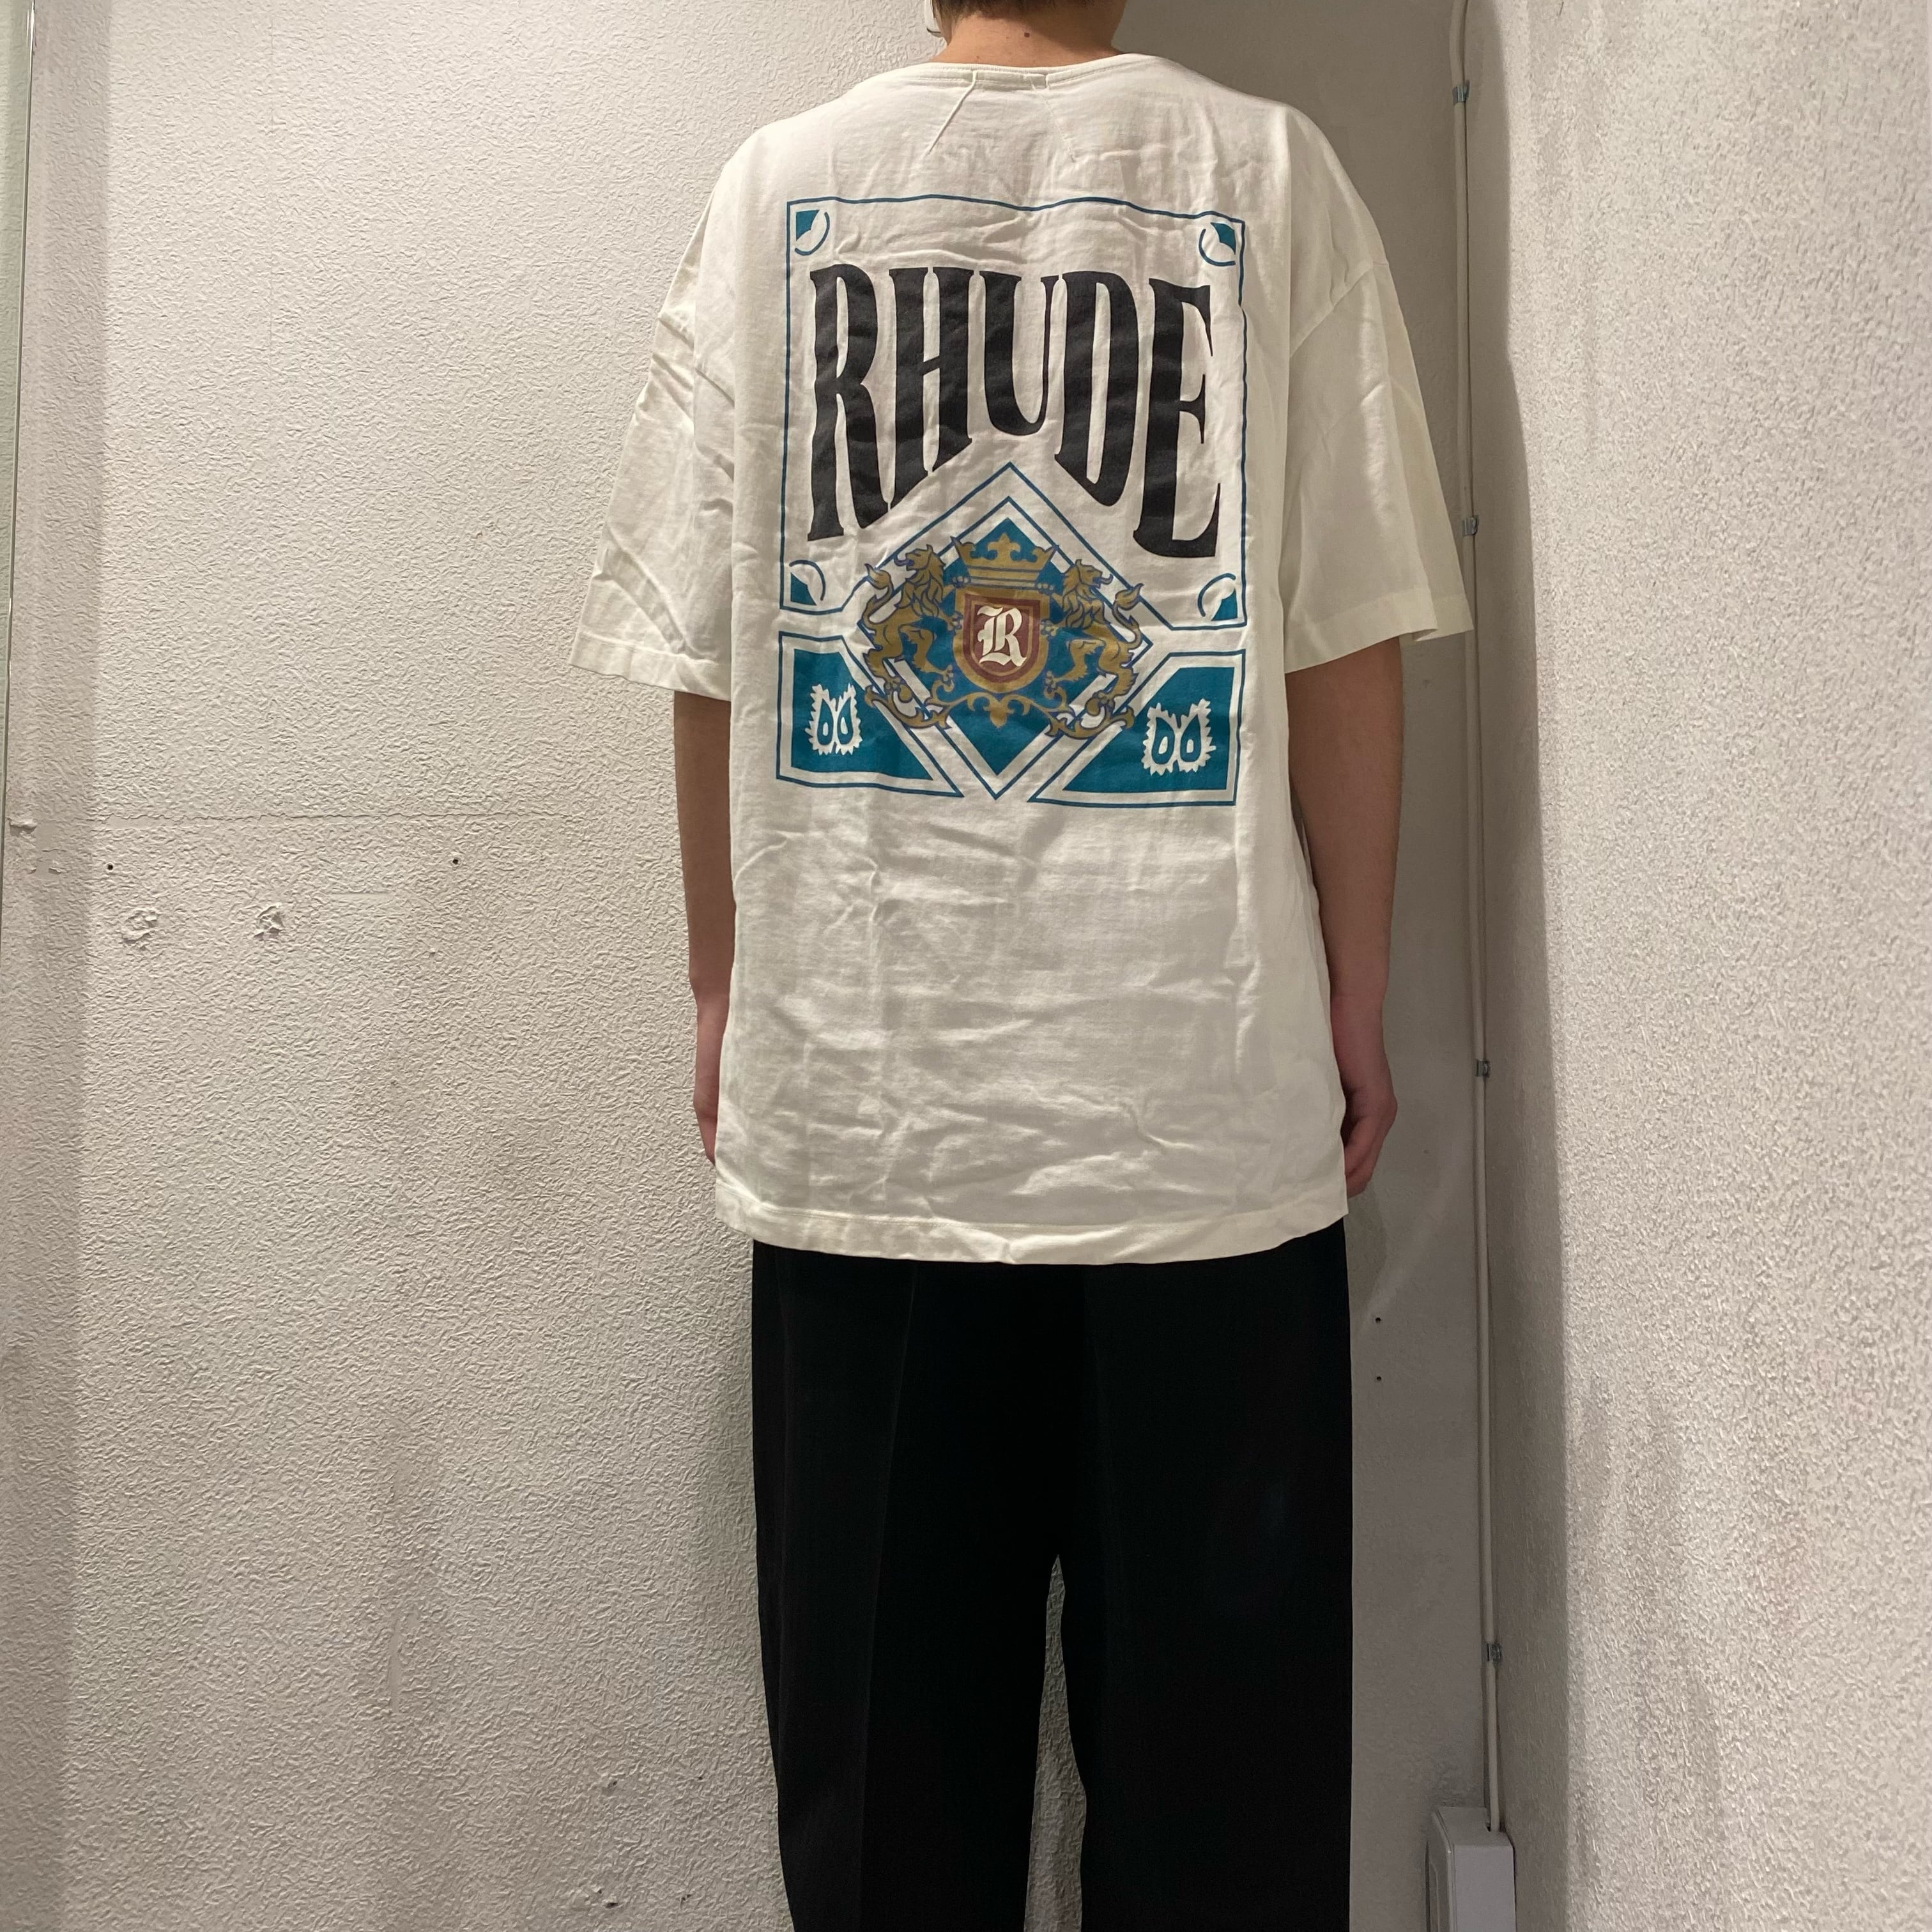 RHUDE ルード CARD TEE 半袖Tシャツ サイズL表参道t   ブランド